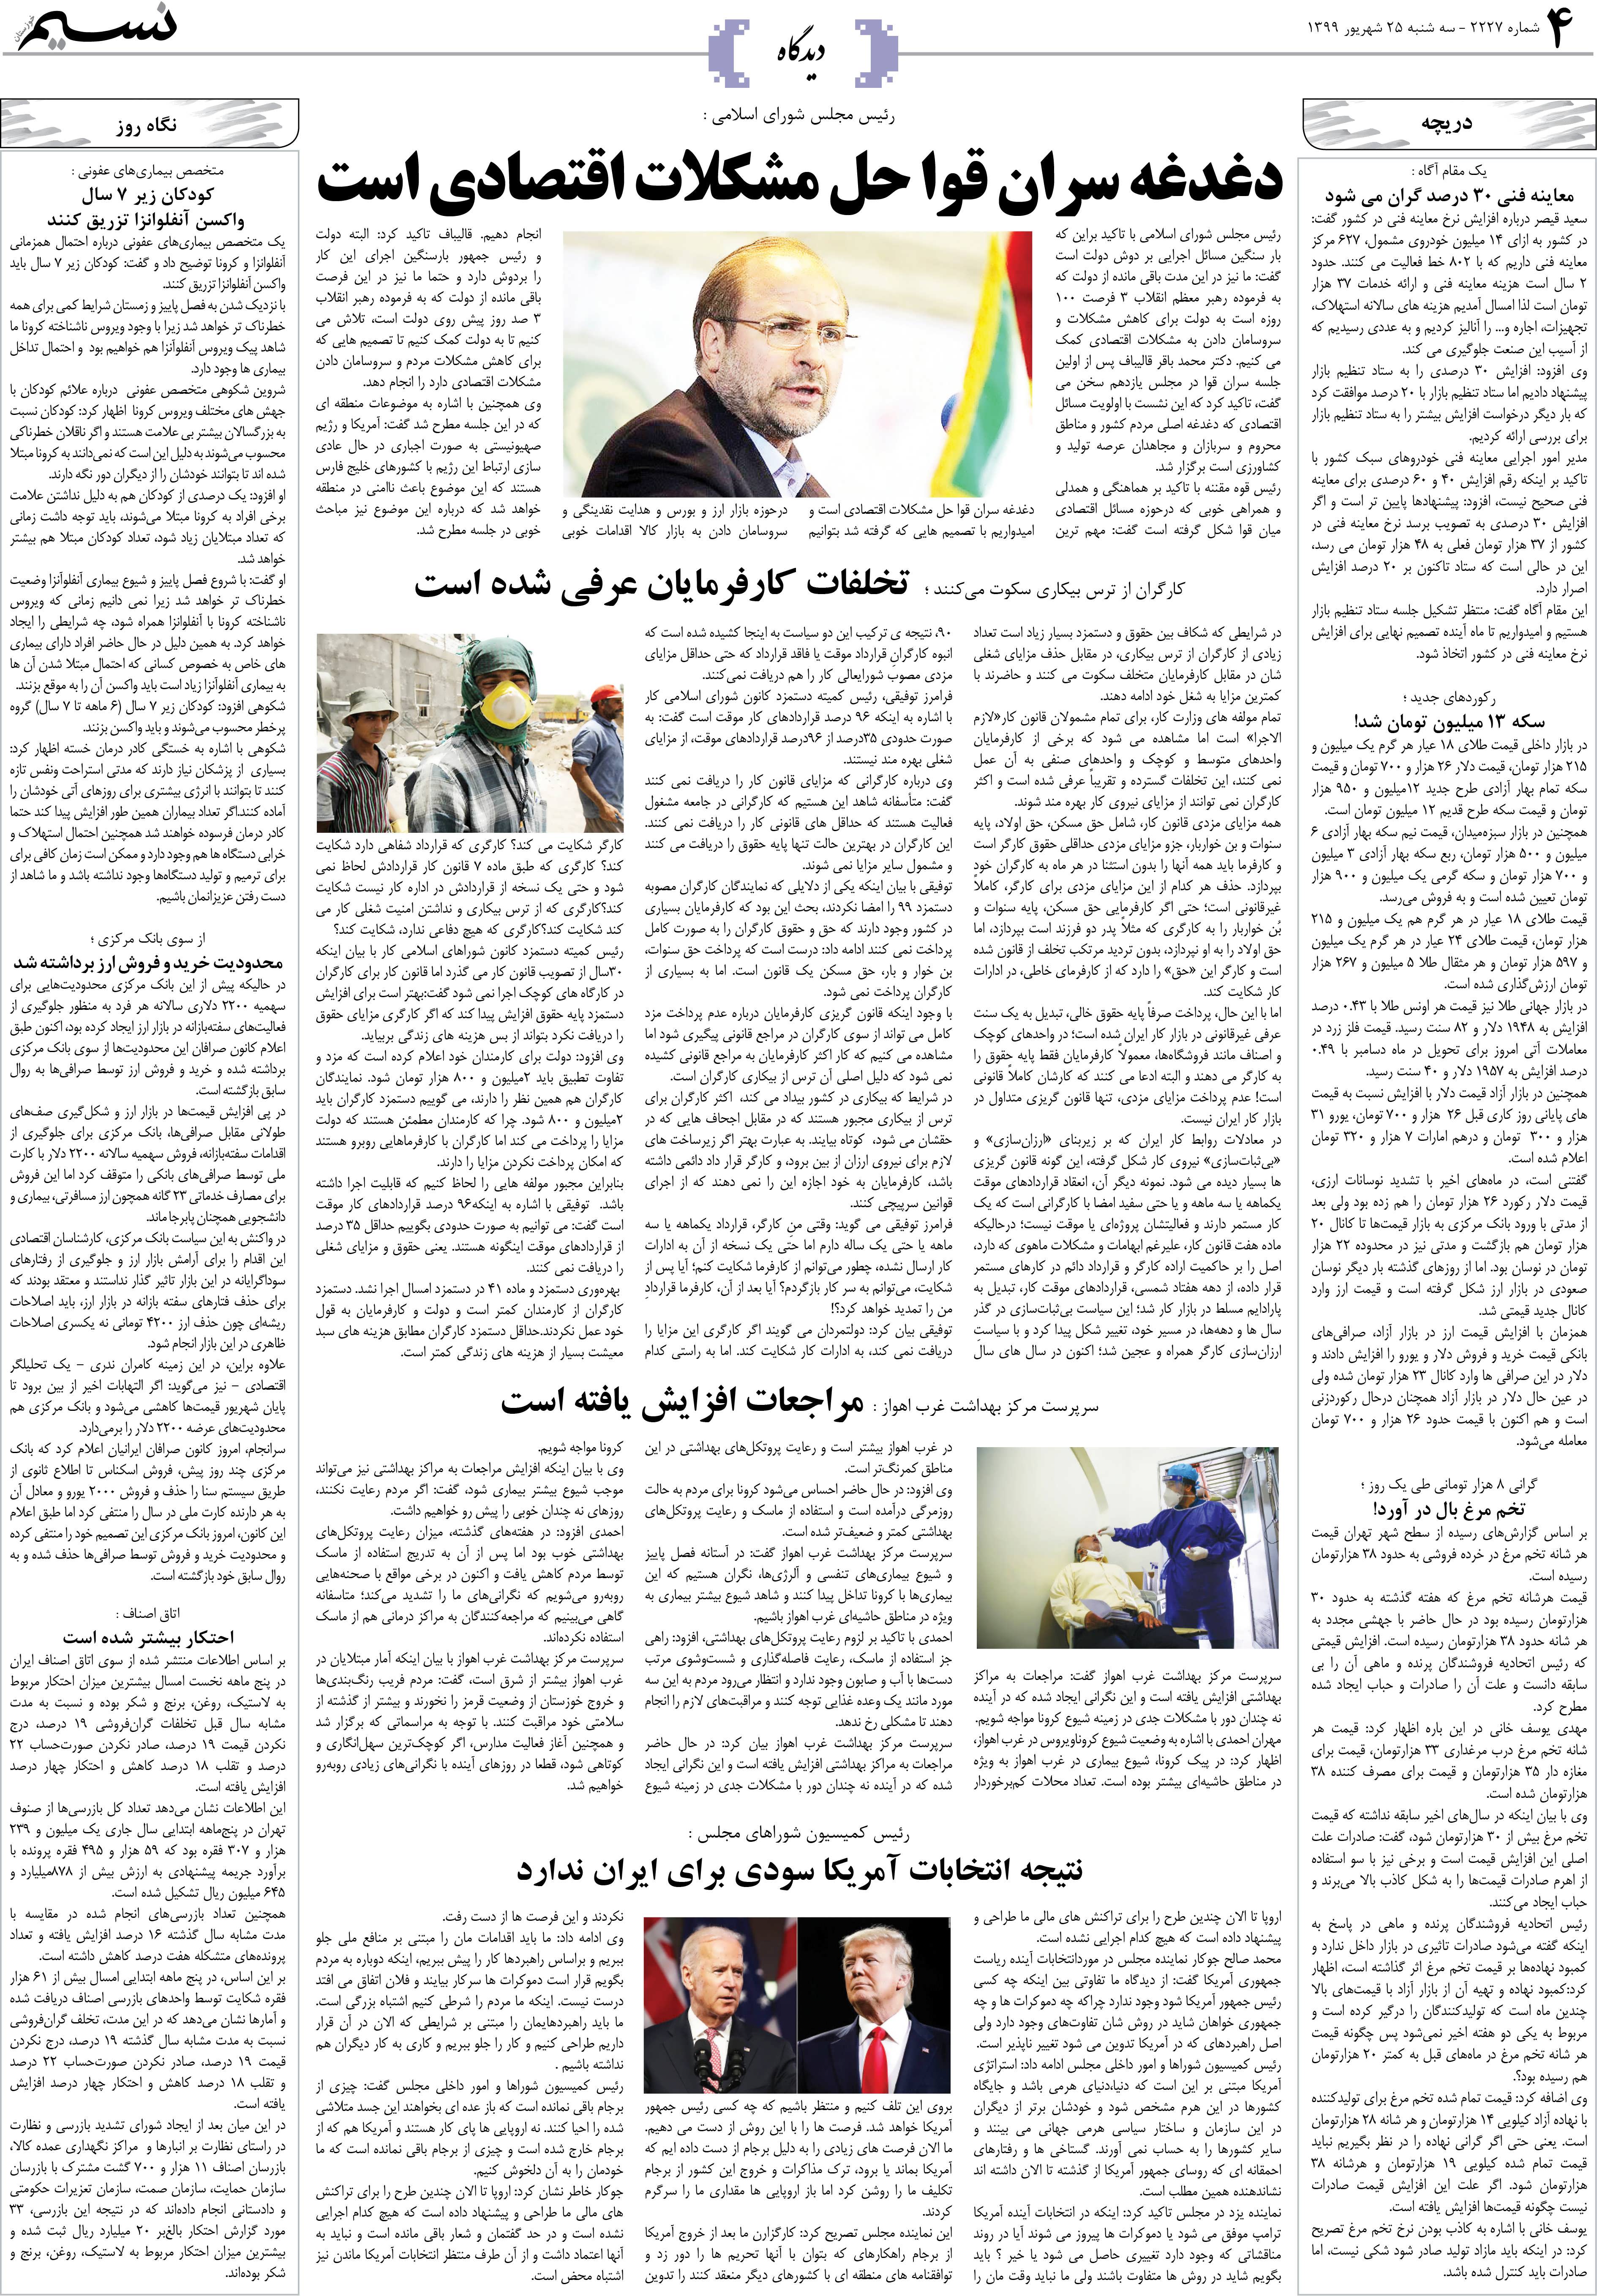 صفحه دیدگاه روزنامه نسیم شماره 2227